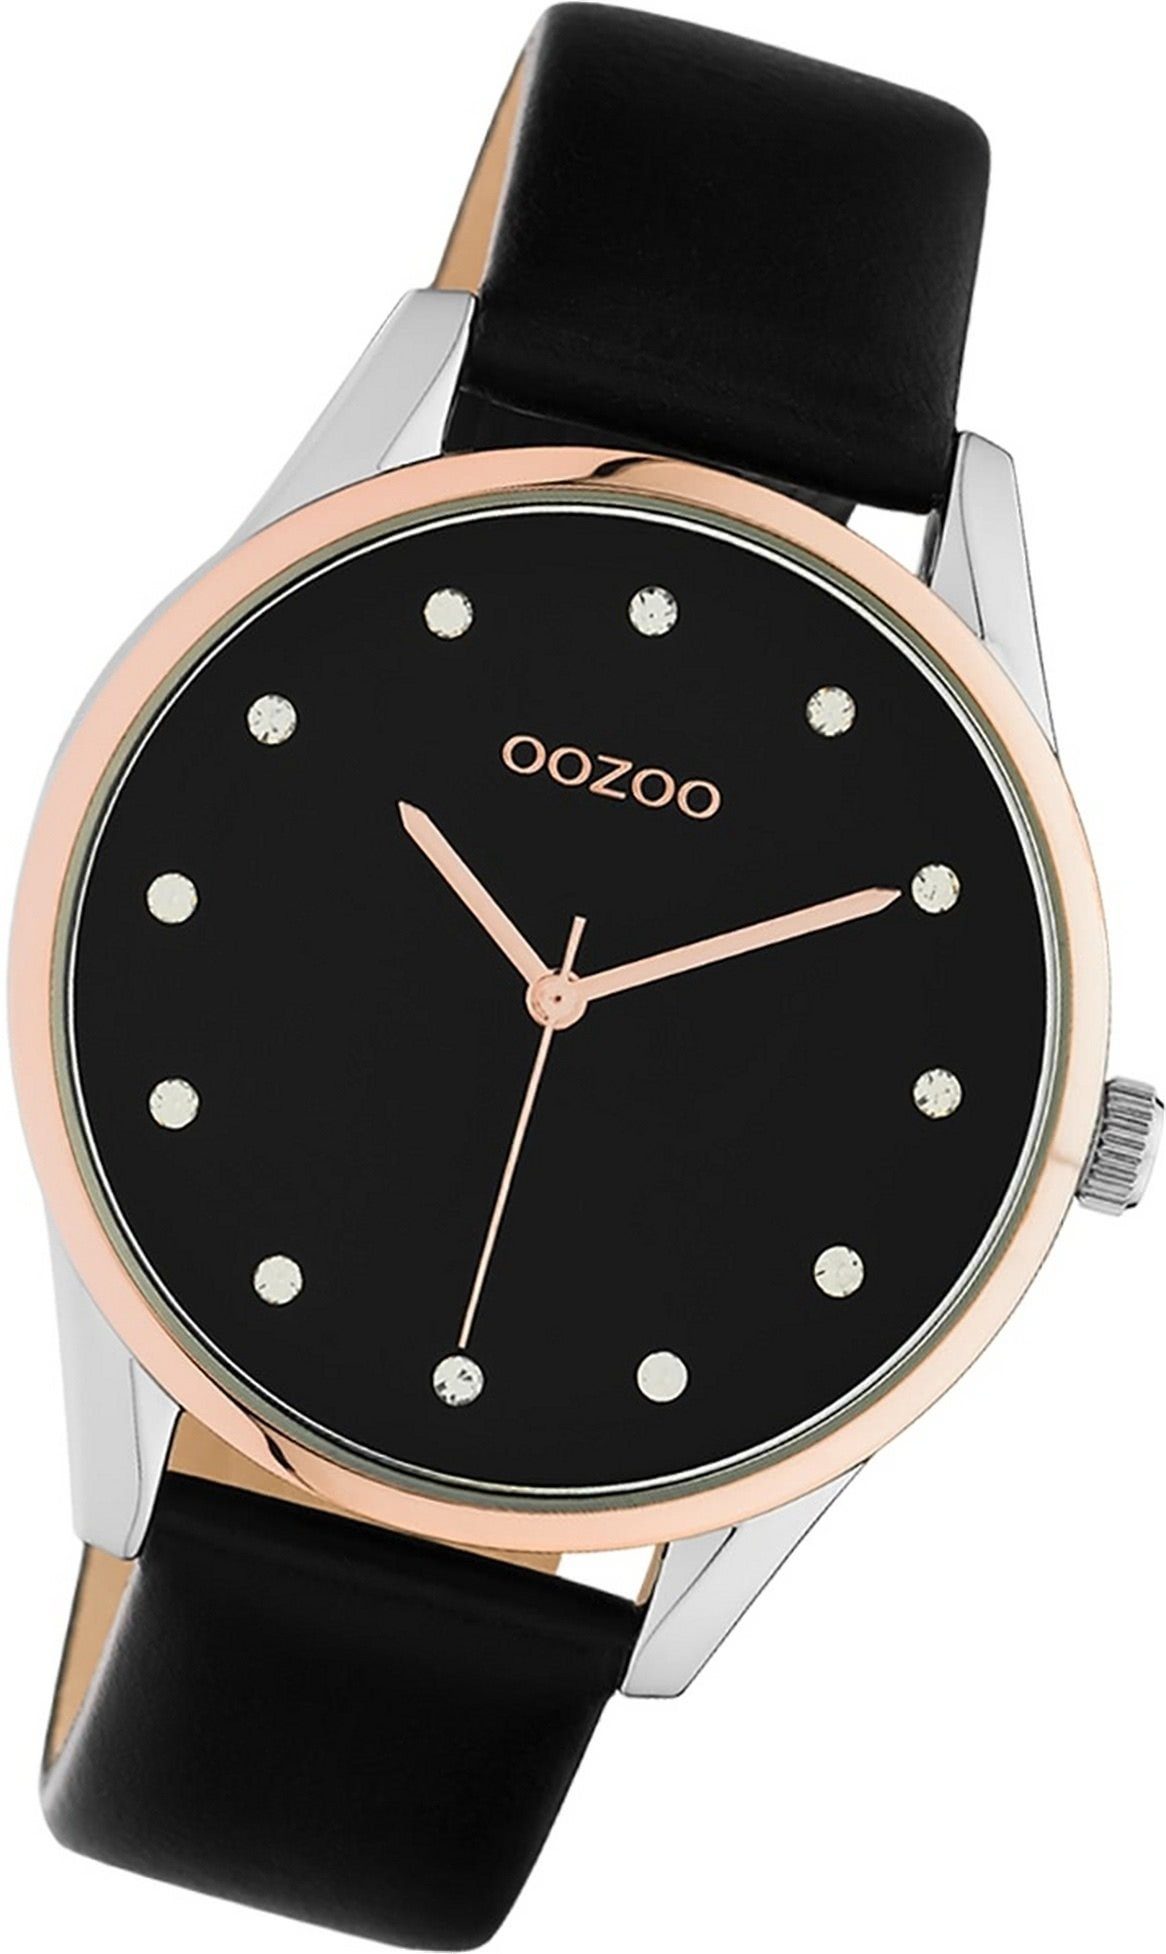 schwarz, Lederarmband (ca. C10954 Damen groß Damenuhr Uhr Oozoo 40mm) OOZOO Gehäuse, Quarzuhr rundes Leder Analog,